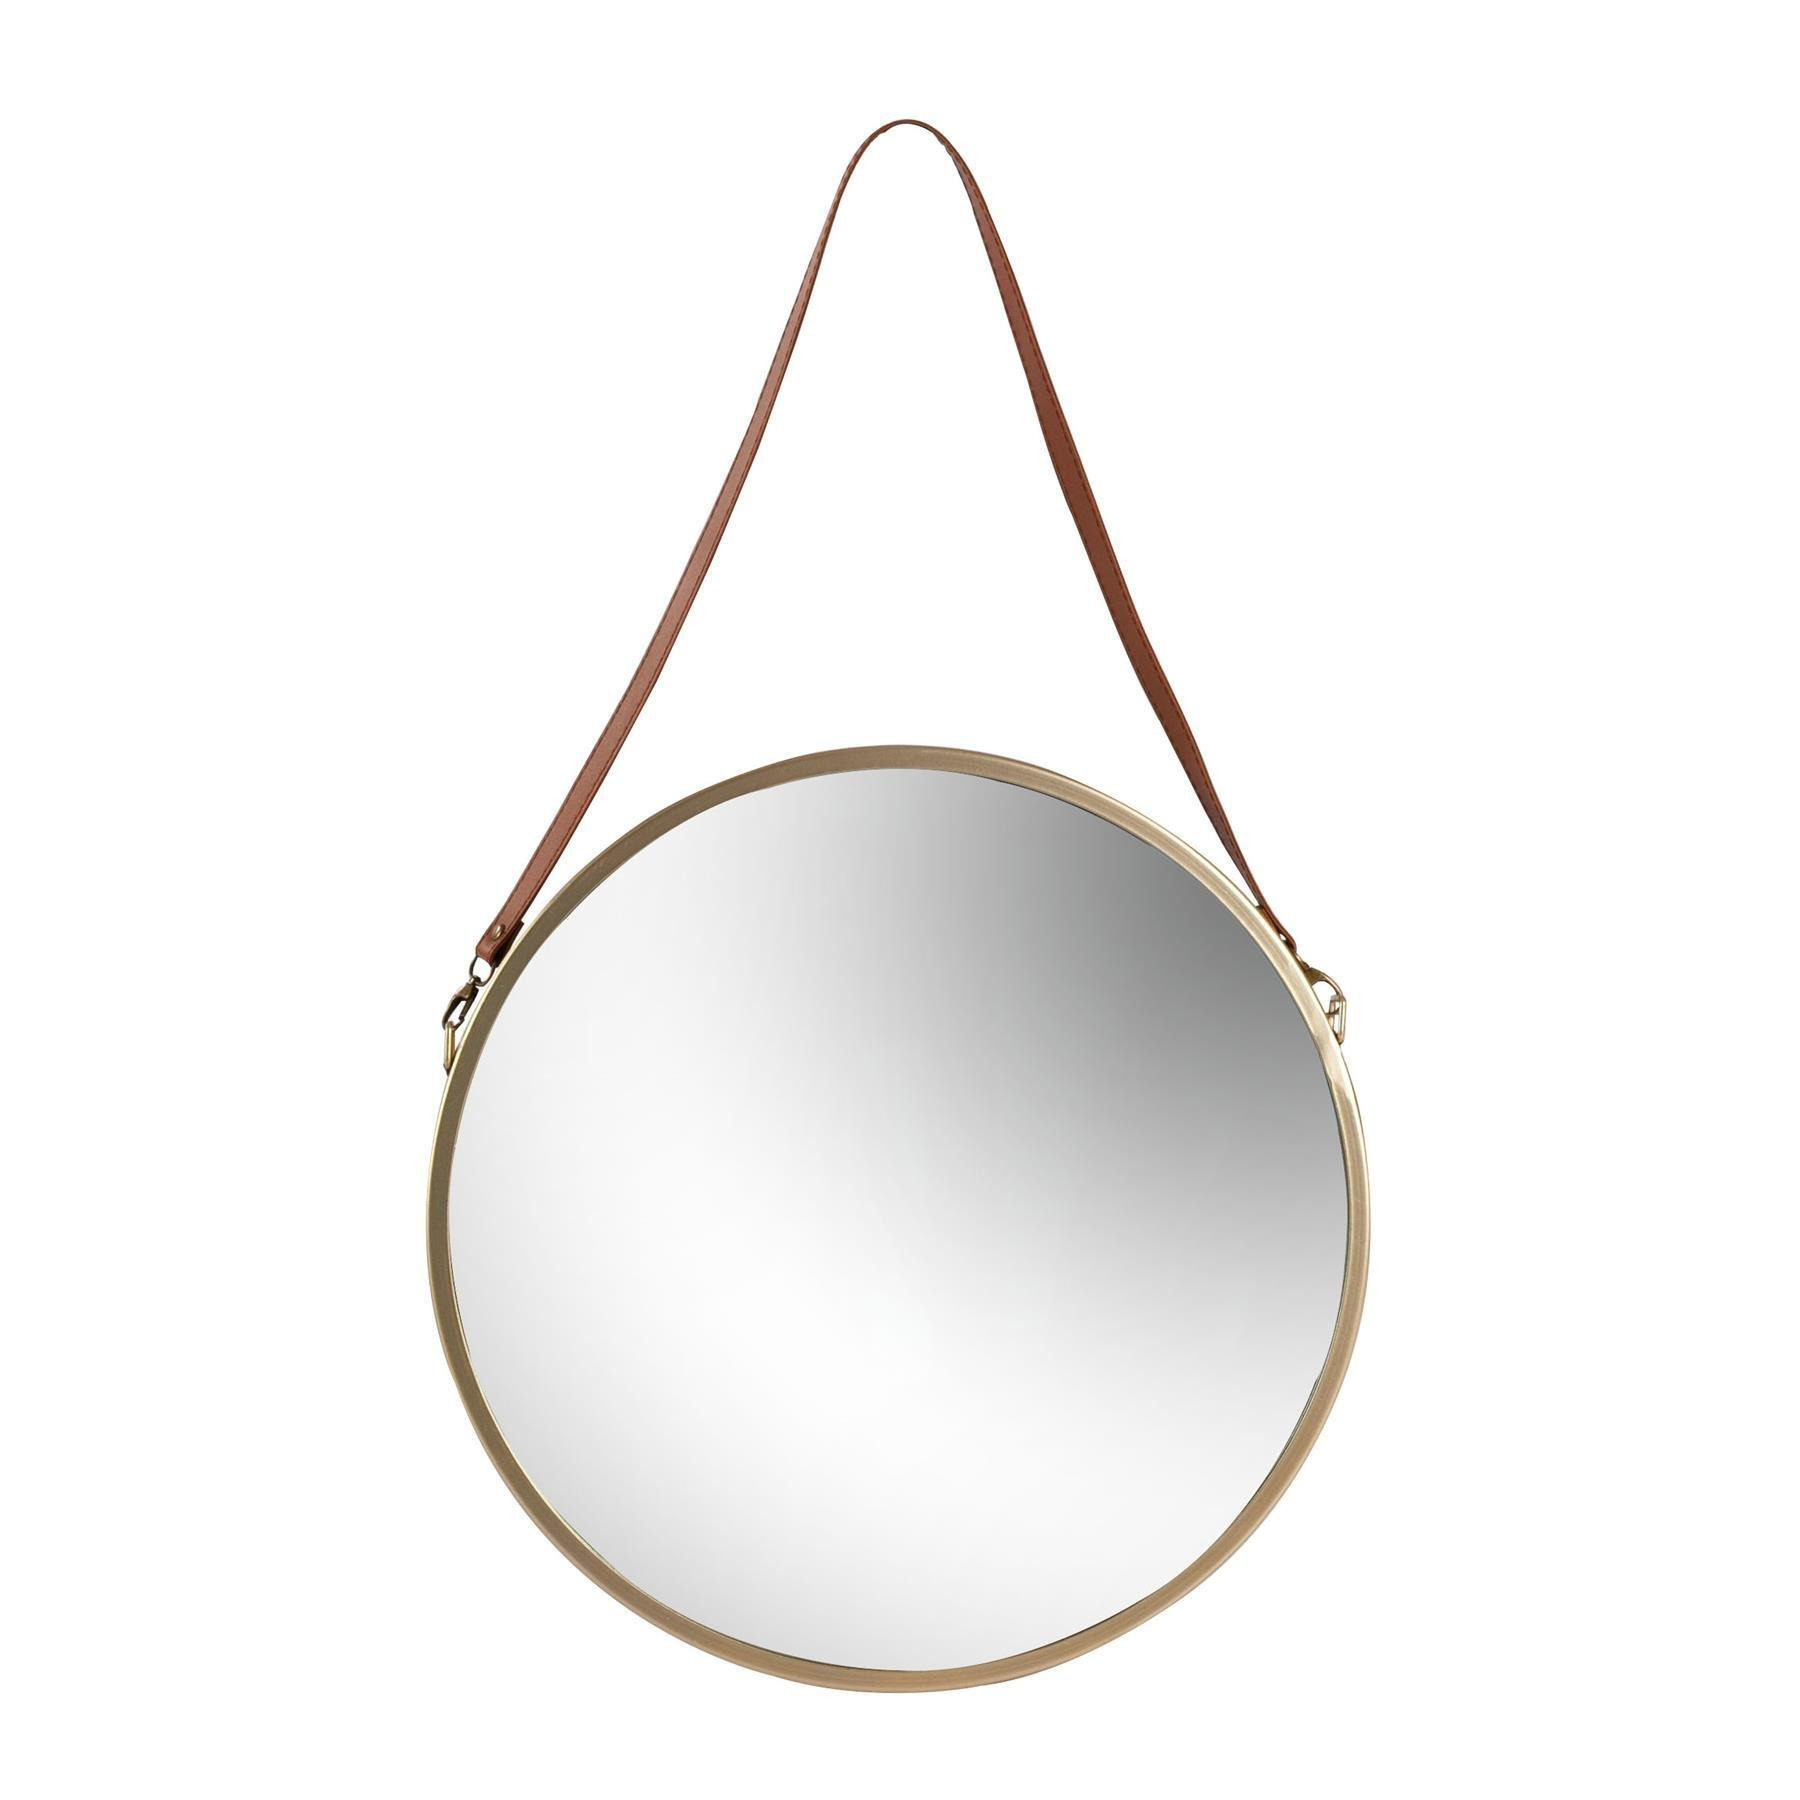 40cm Round Metal Frame Hanging Mirror on Strap Gold - image 1